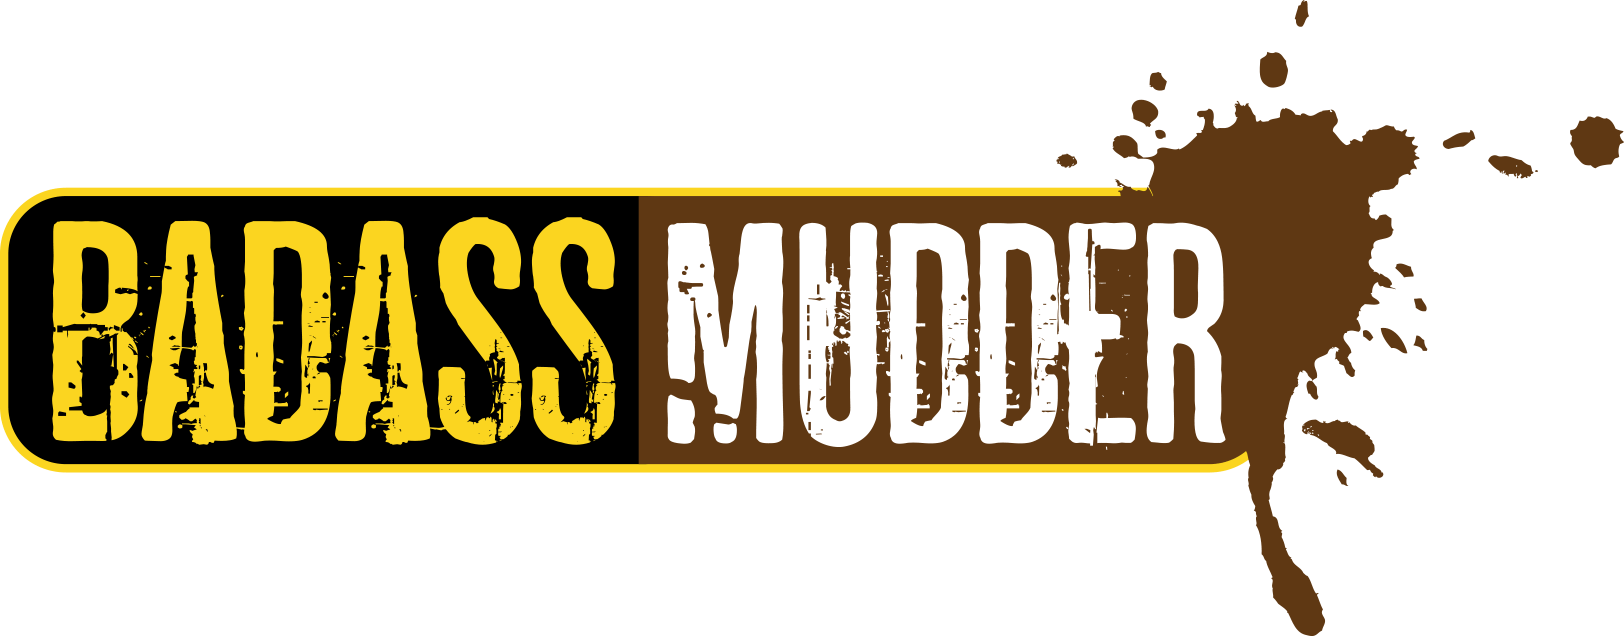 Mudders Logo - Badass Mudder Event Photos